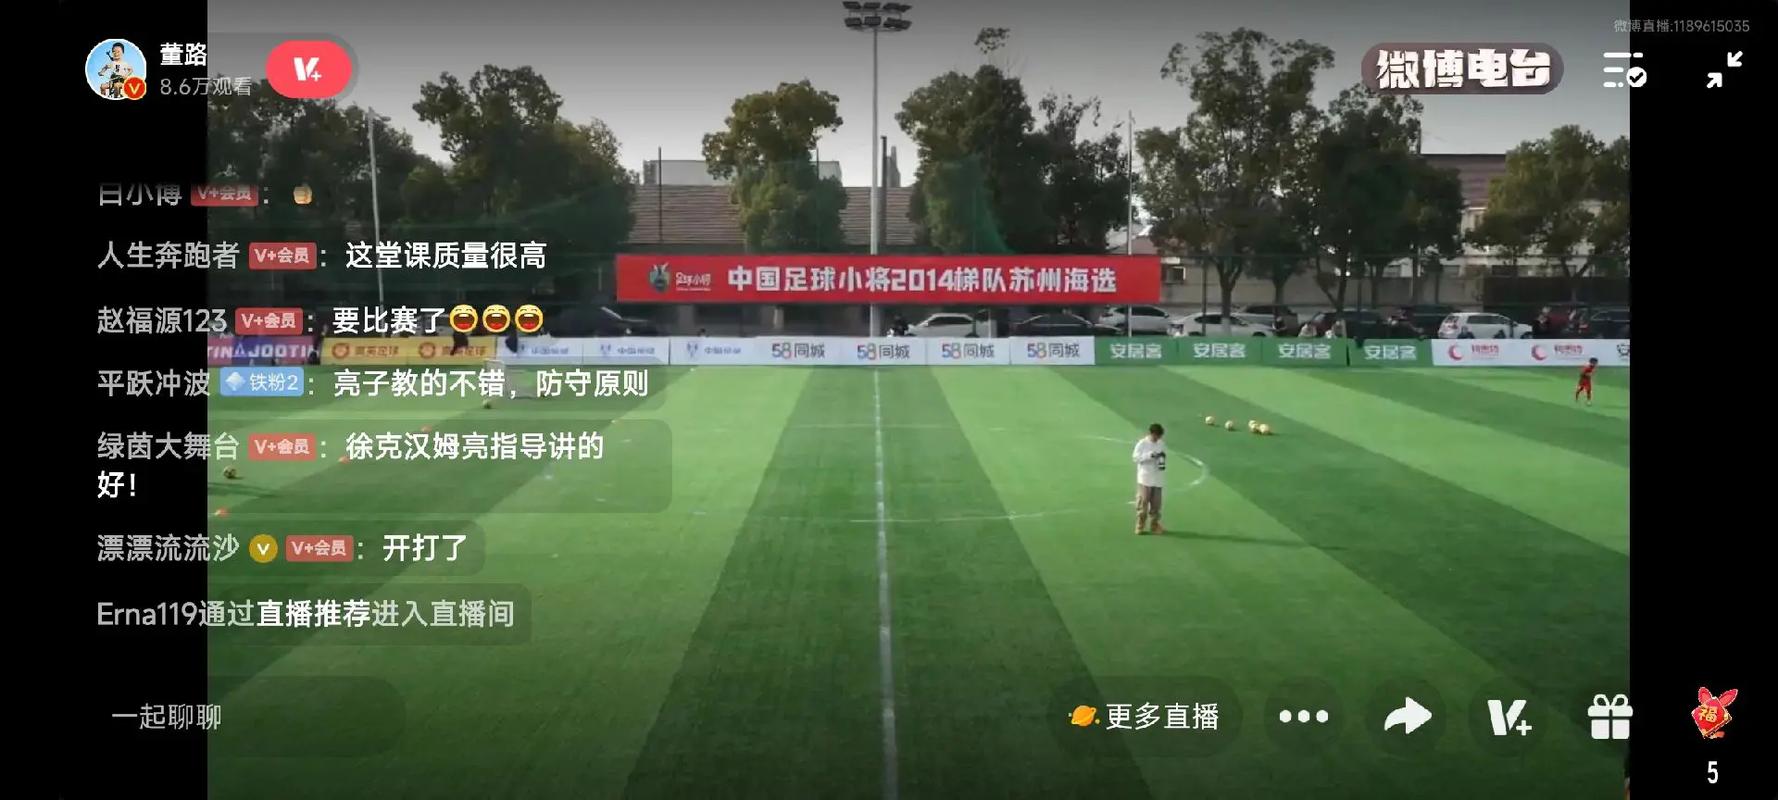 中国足球赛直播间